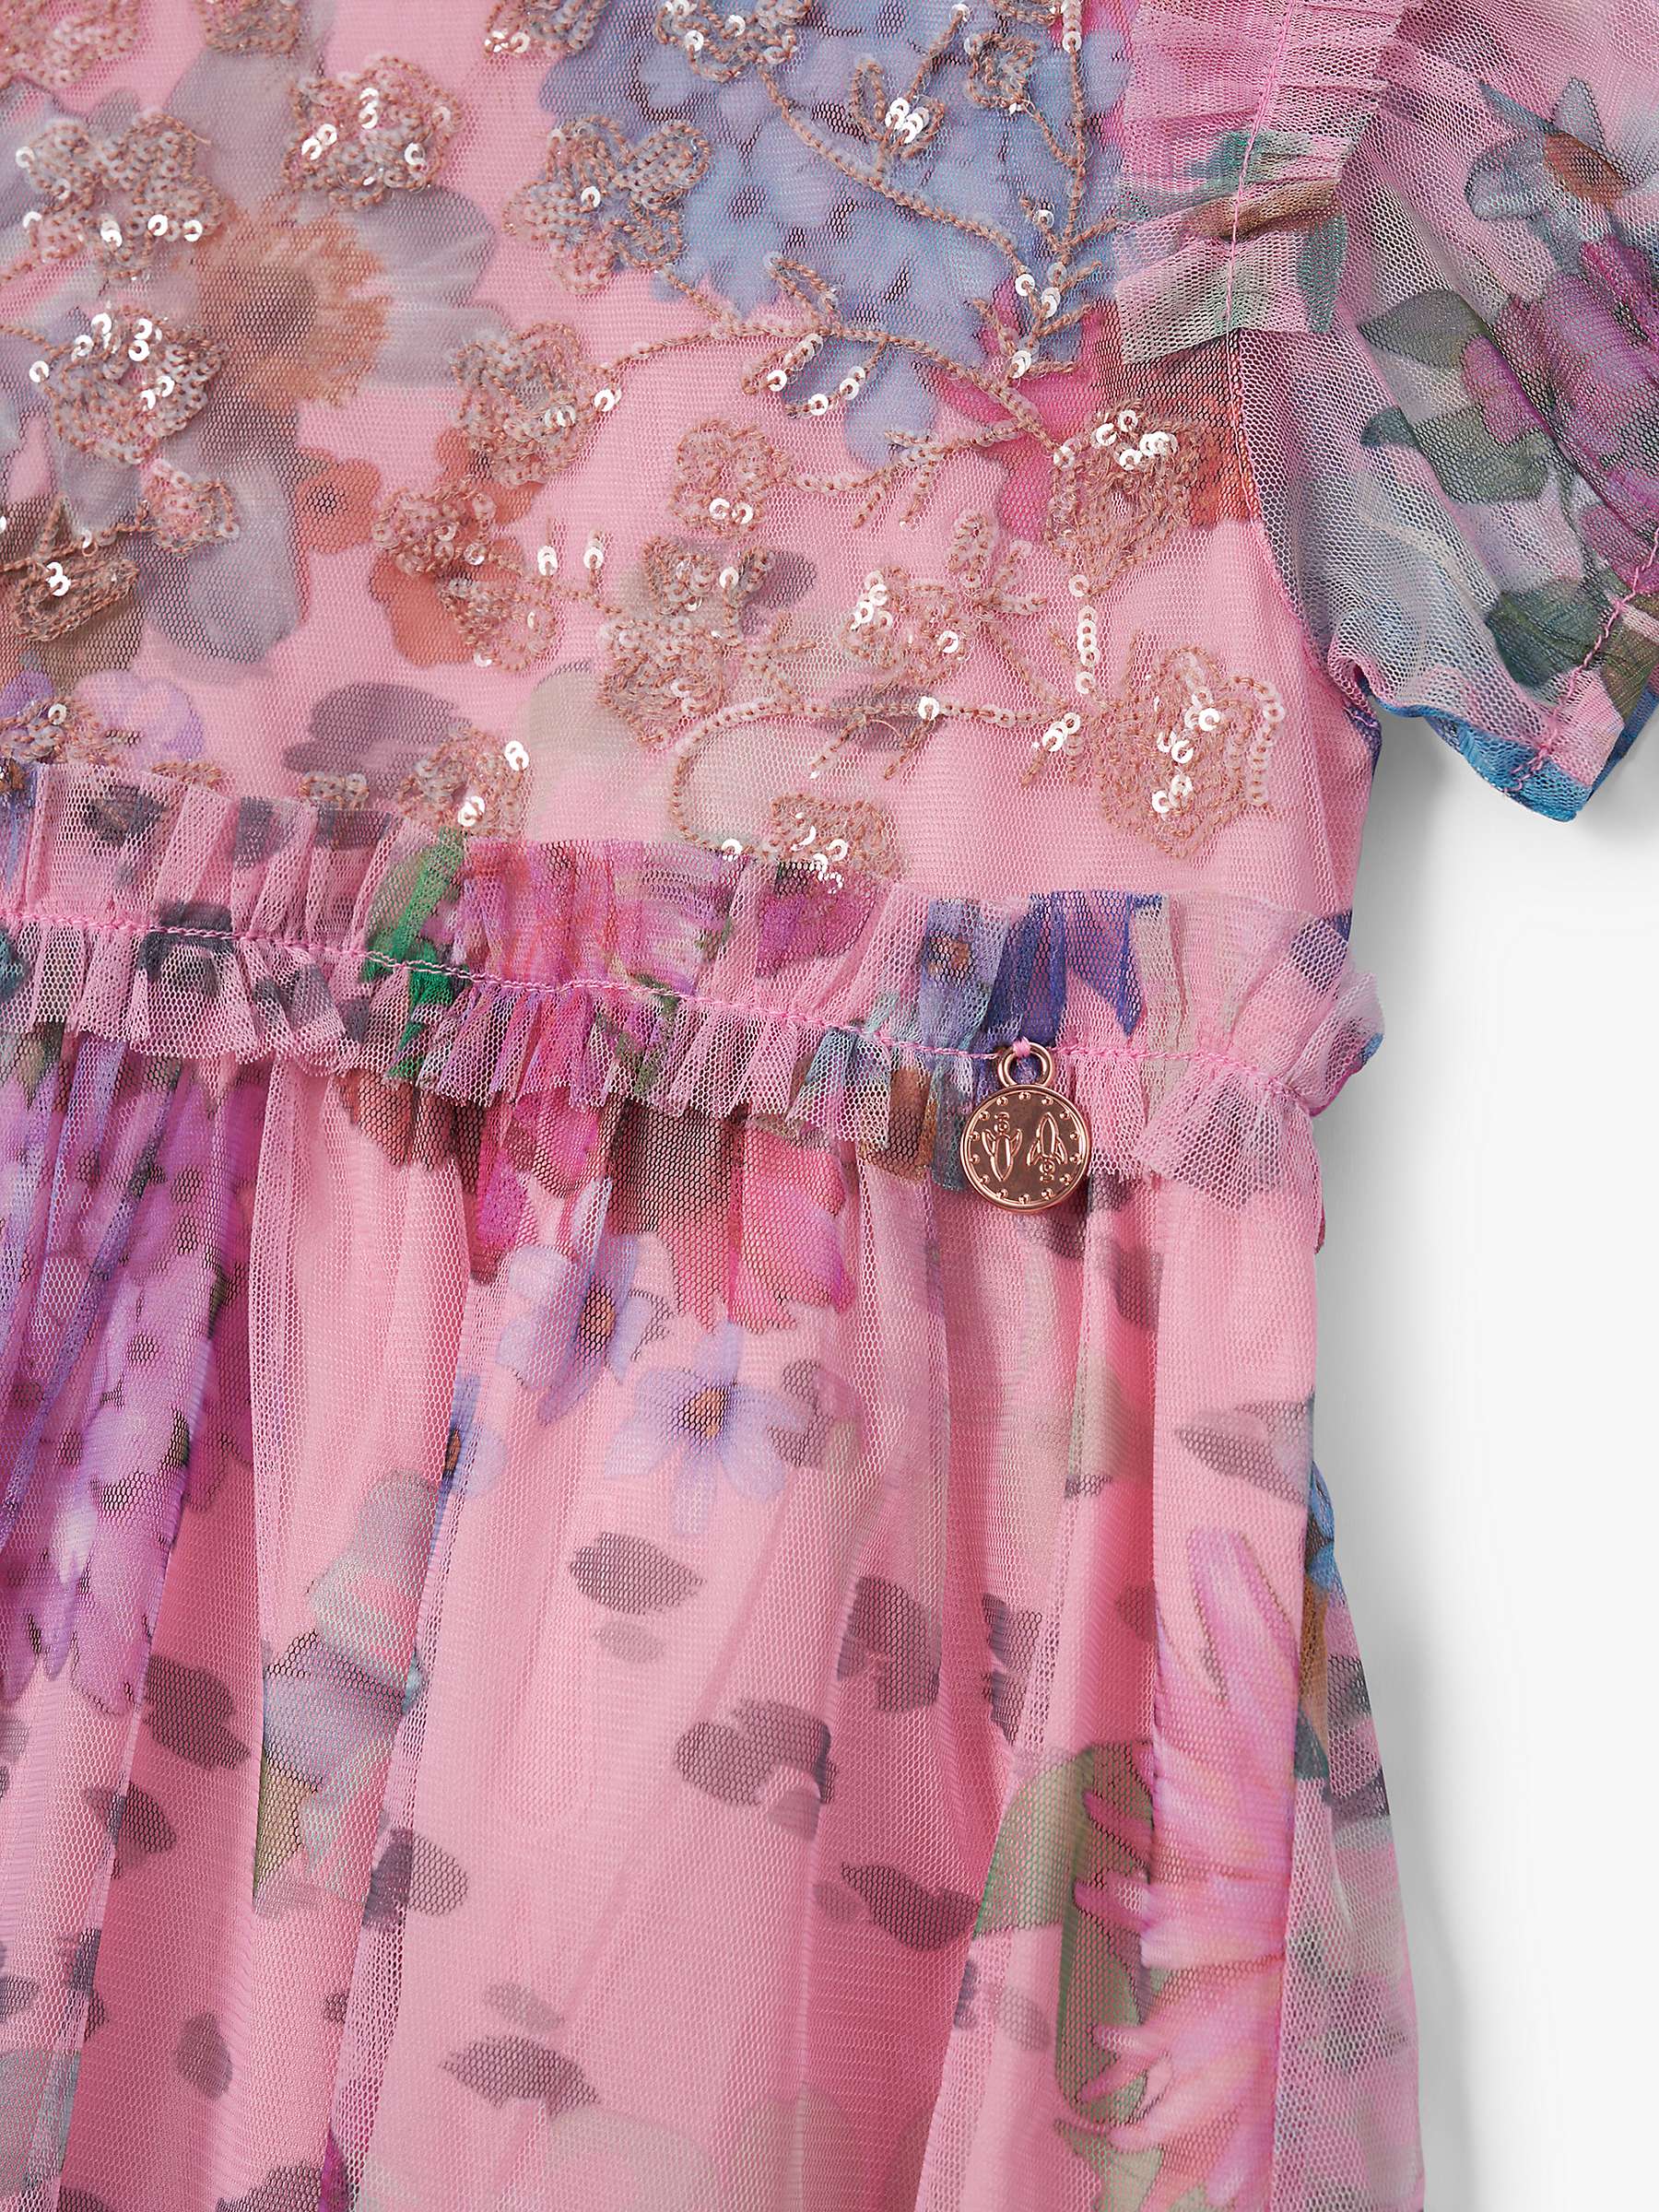 Buy Angel & Rocket Kids' Embroidered Floral Print Dress, Pink/Multi Online at johnlewis.com